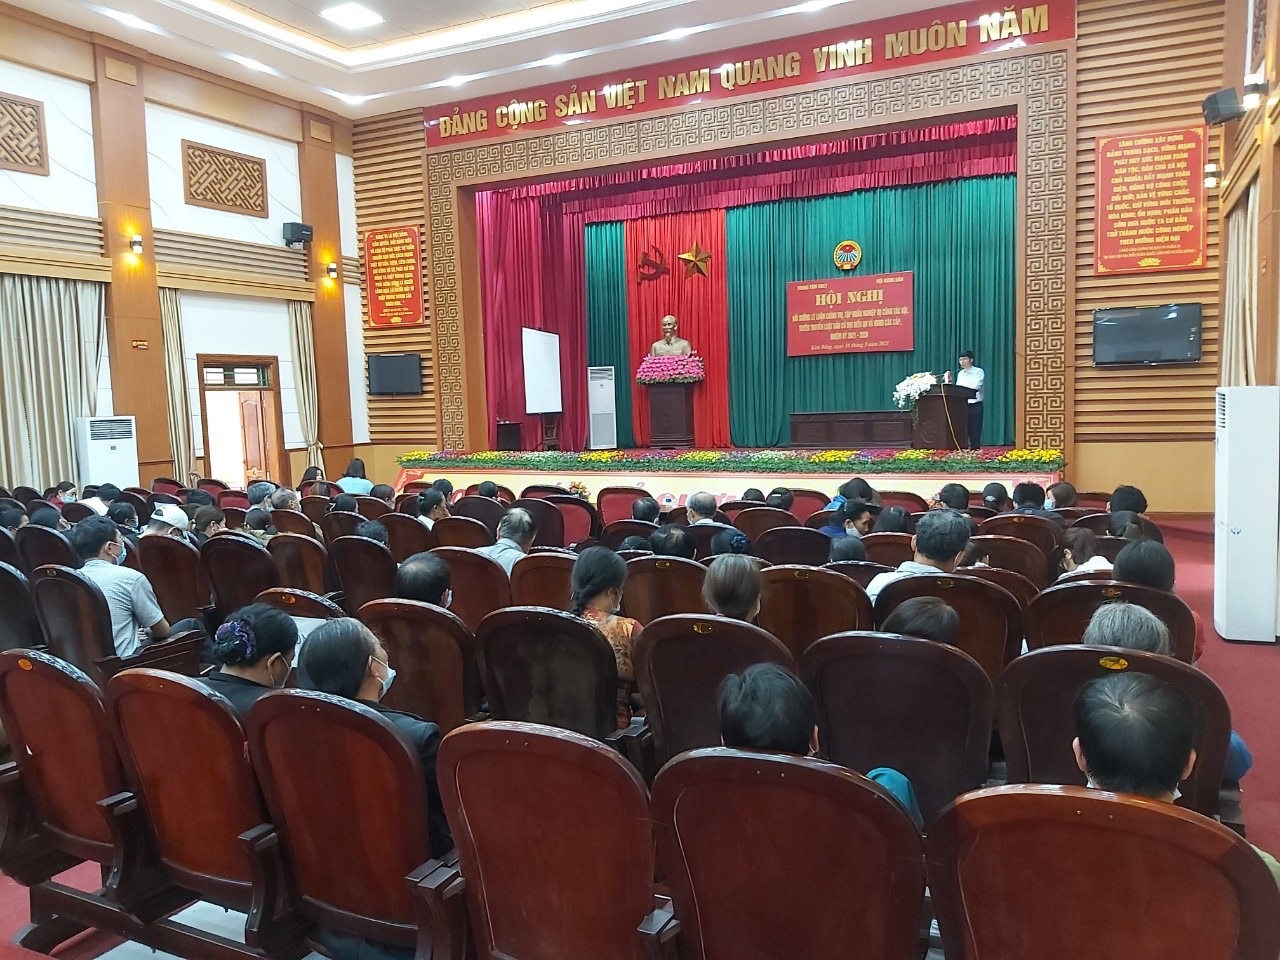 ĐC Tống Văn Tam - Phó chủ tịch Hội nông dân tỉnh  truyền đạt nghiệp vụ công  tác hội.jpg